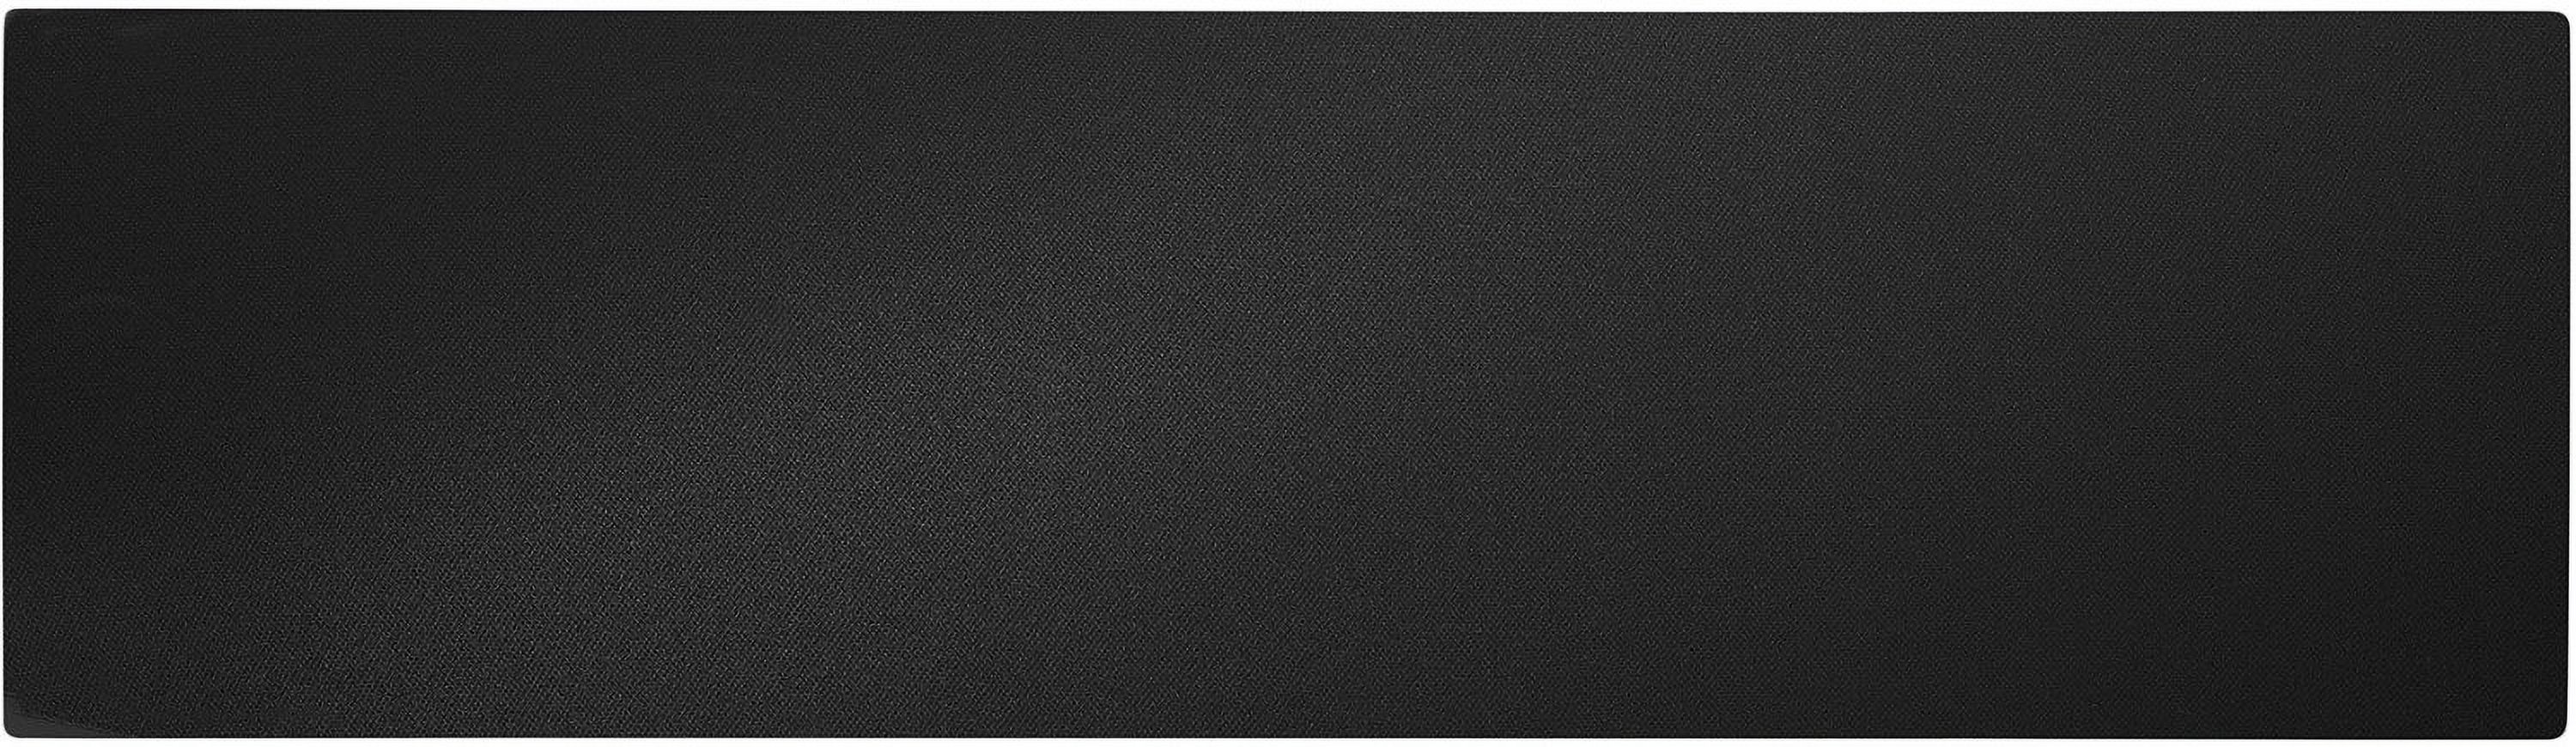 NHT Media Series Slim Center Channel Speaker - High Gloss Black - image 4 of 5